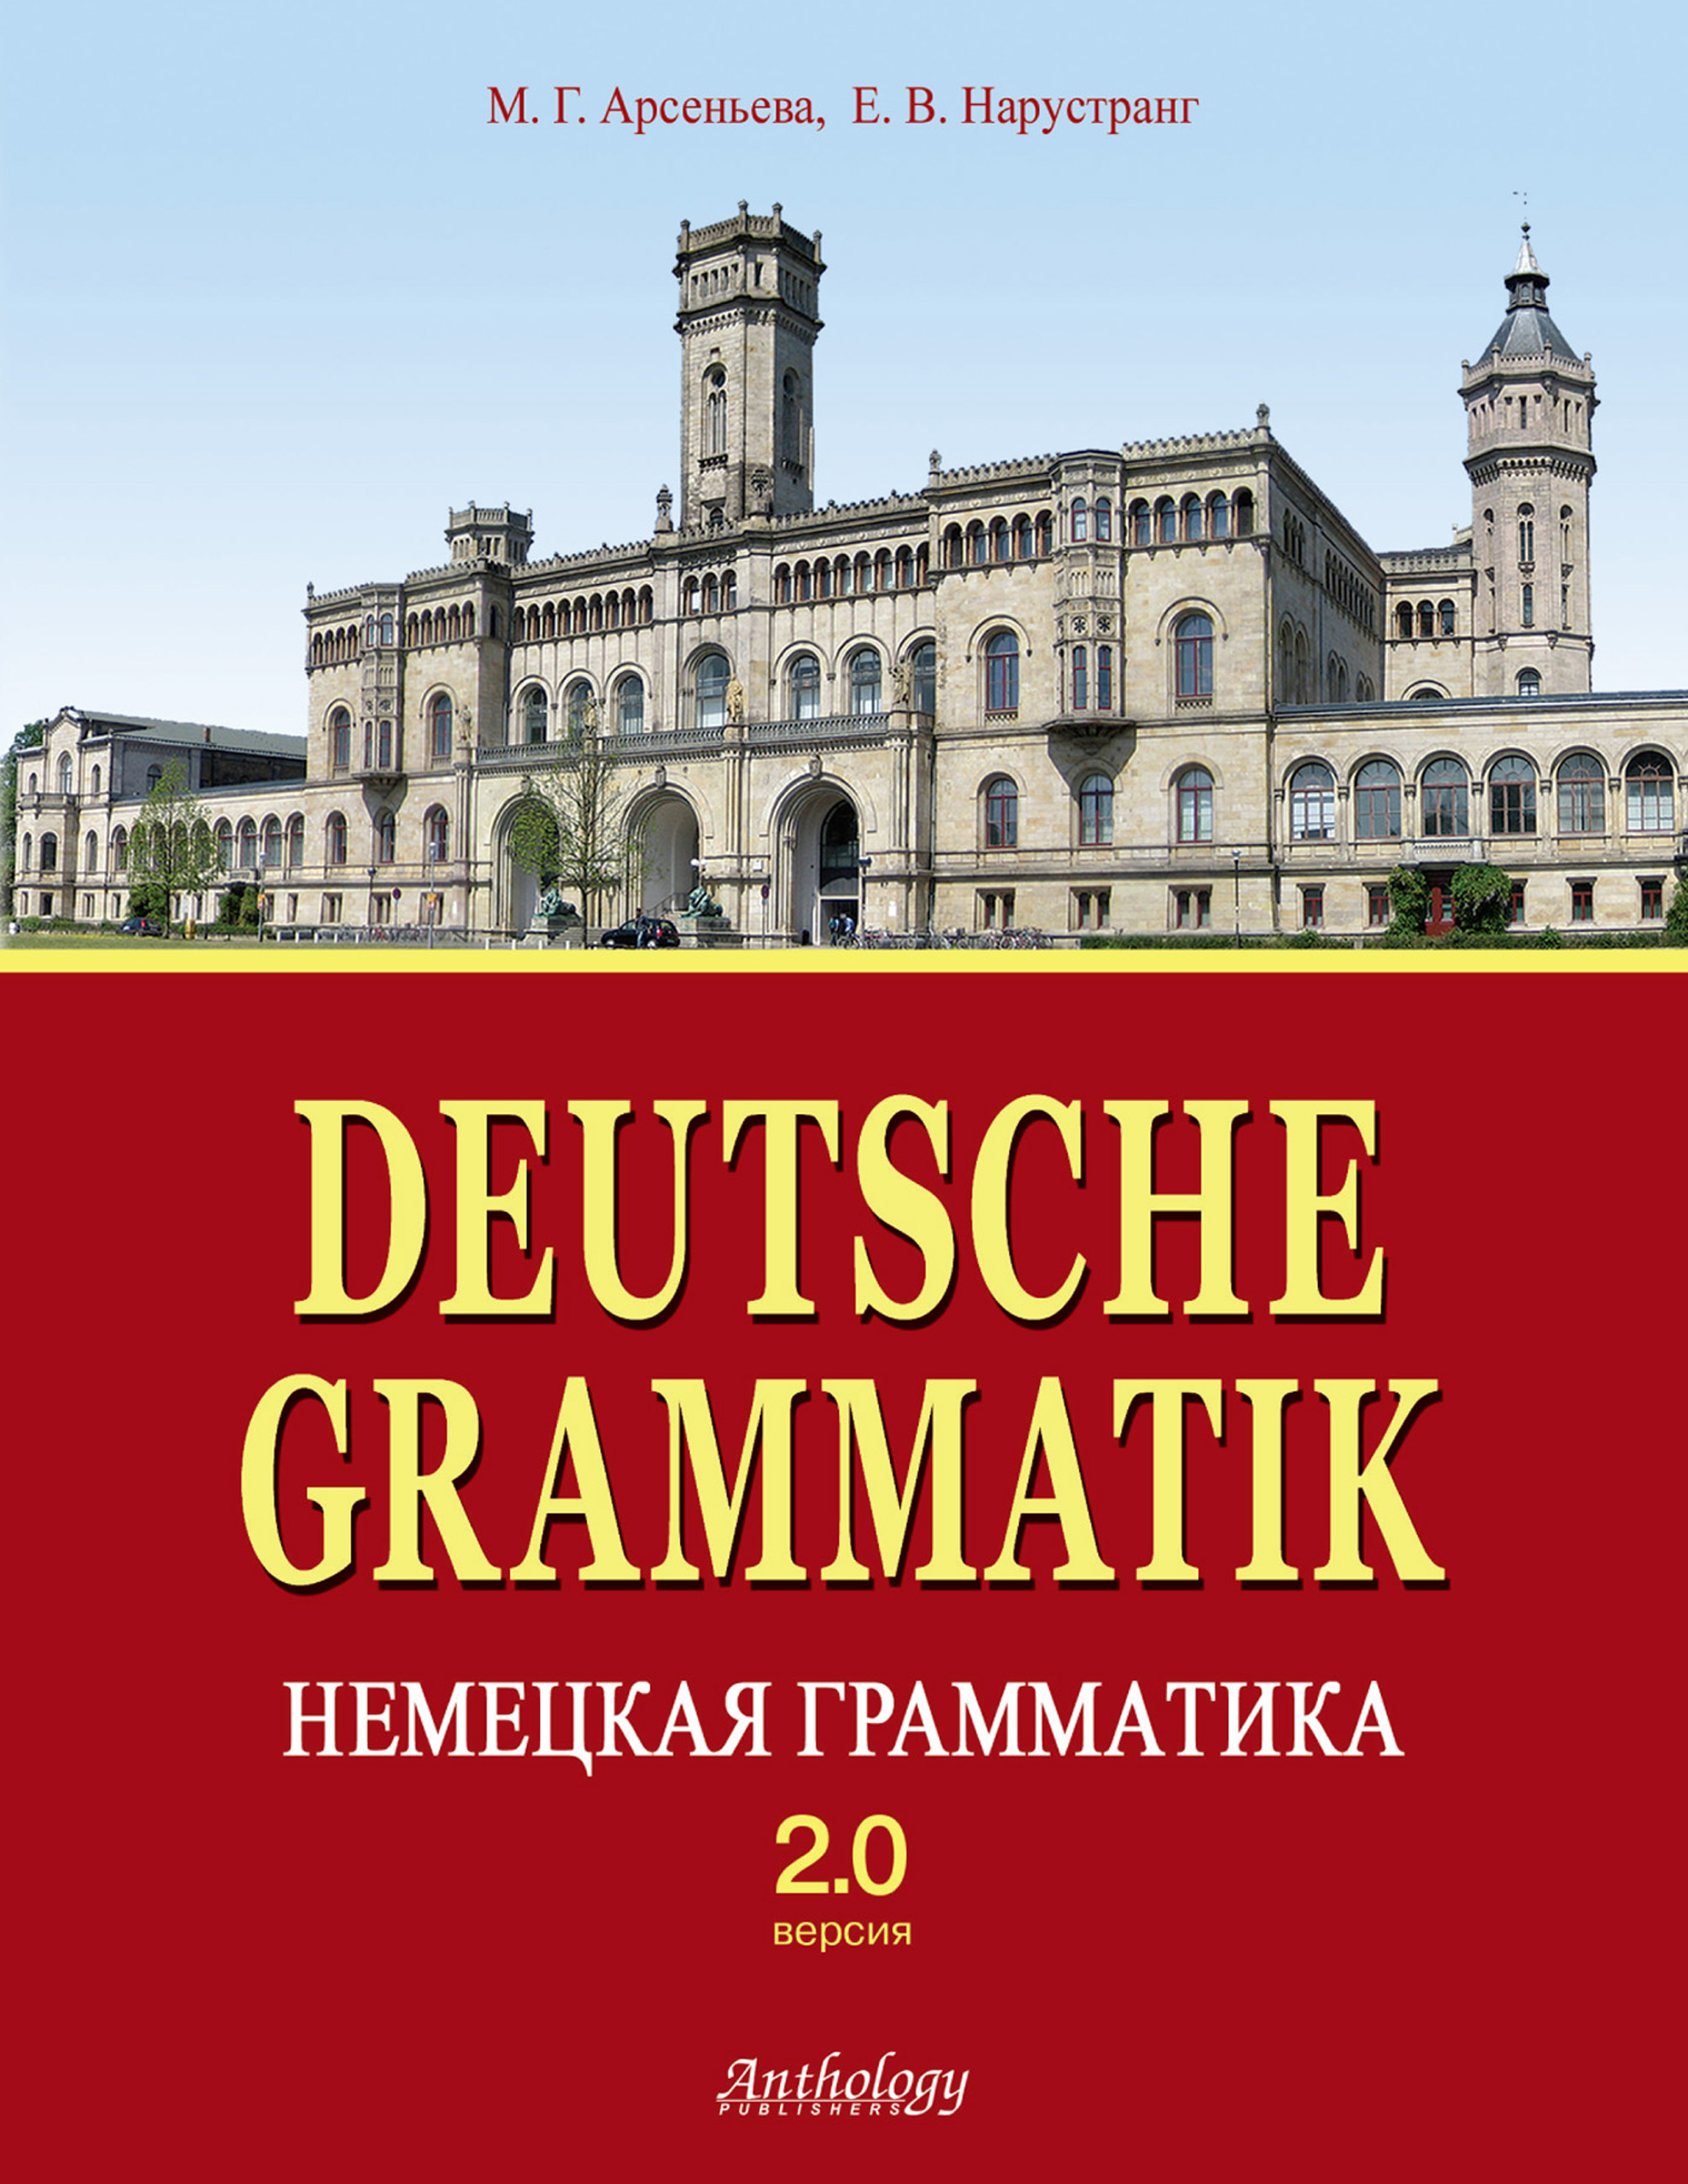 Deutsche grammatik. Немецкая грамматика. Грамматика немецкого языка. Грамматика Нарустранг немецкий язык. Грамматика Германии.